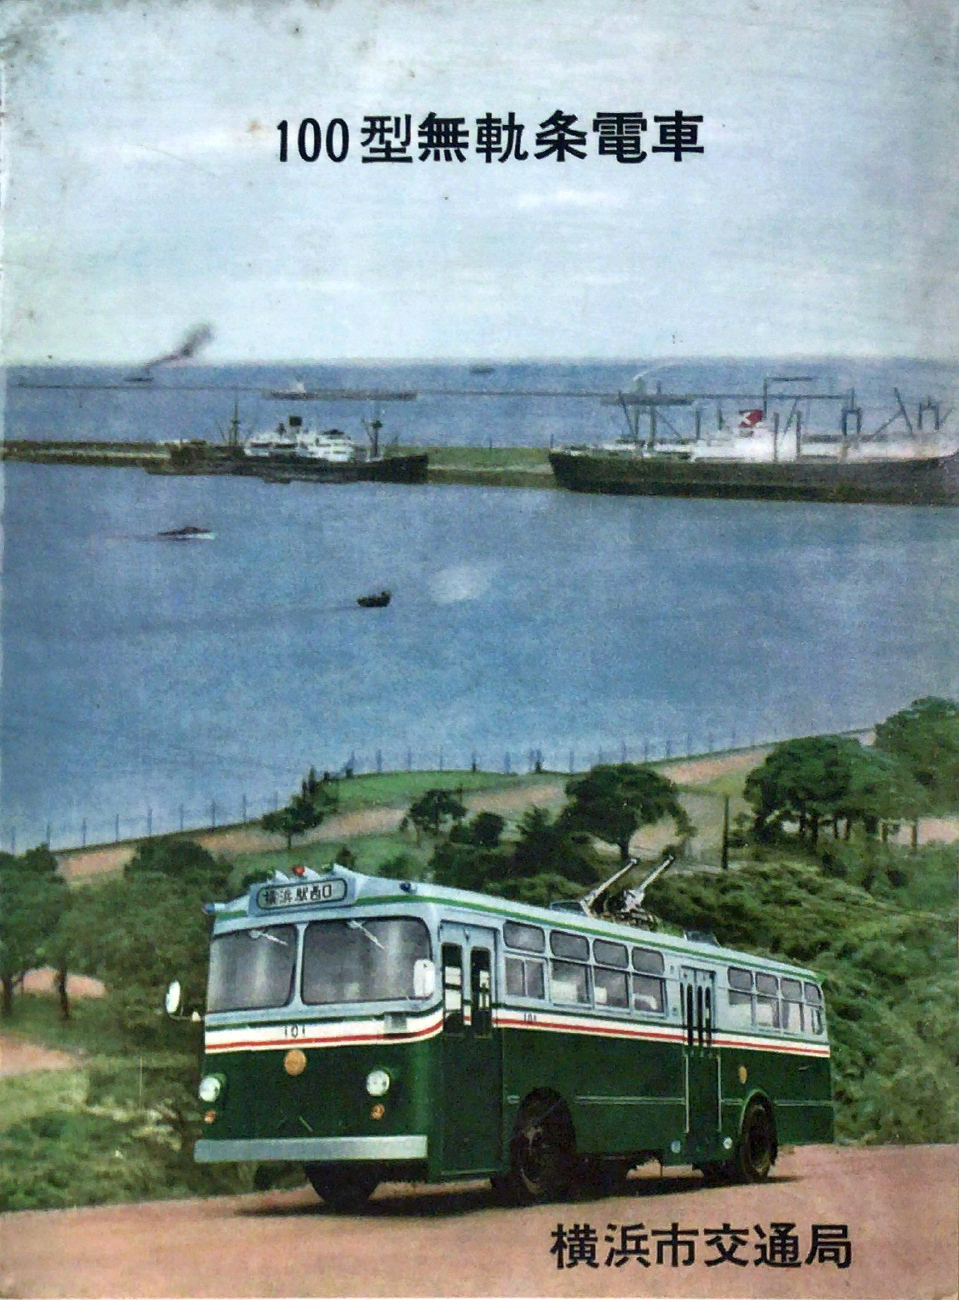 横浜市, Tokyu 100 series # 101; 横浜市 — Historical photos — Trolleybus (1959-1972); 横浜市 — Miscellaneous photos